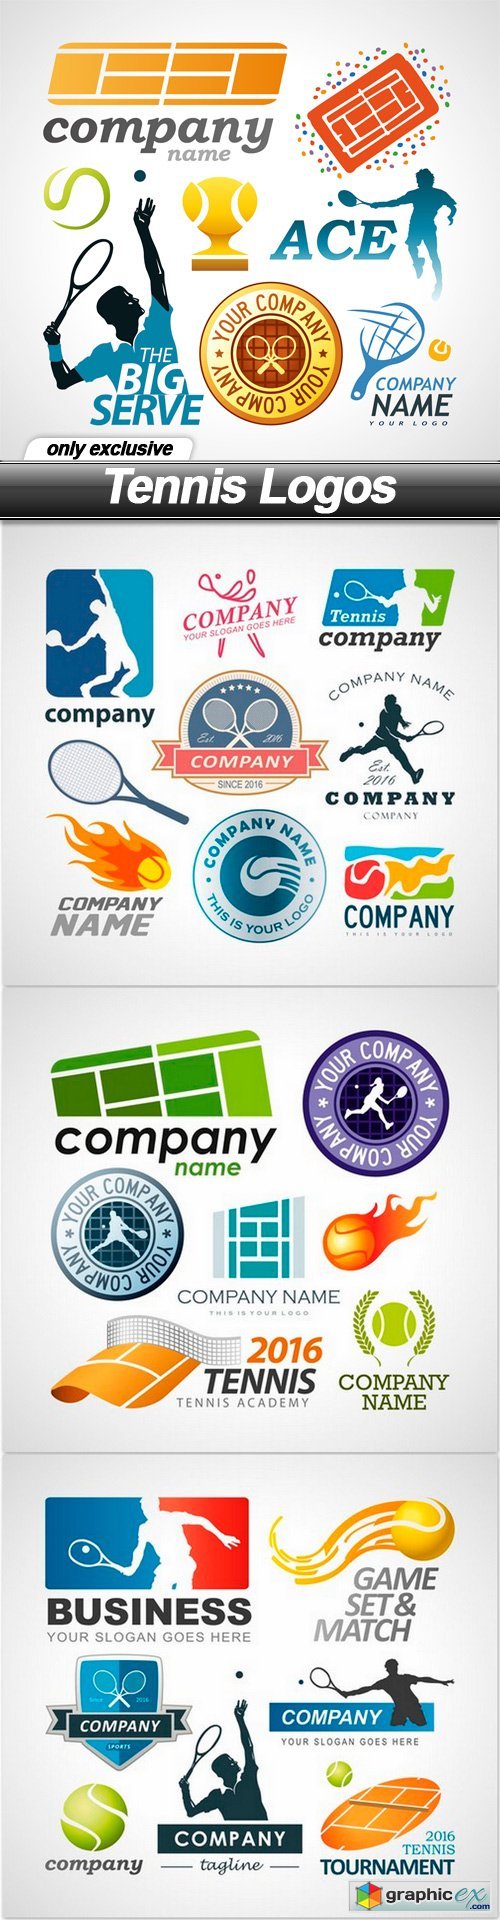 Tennis Logos - 4 EPS